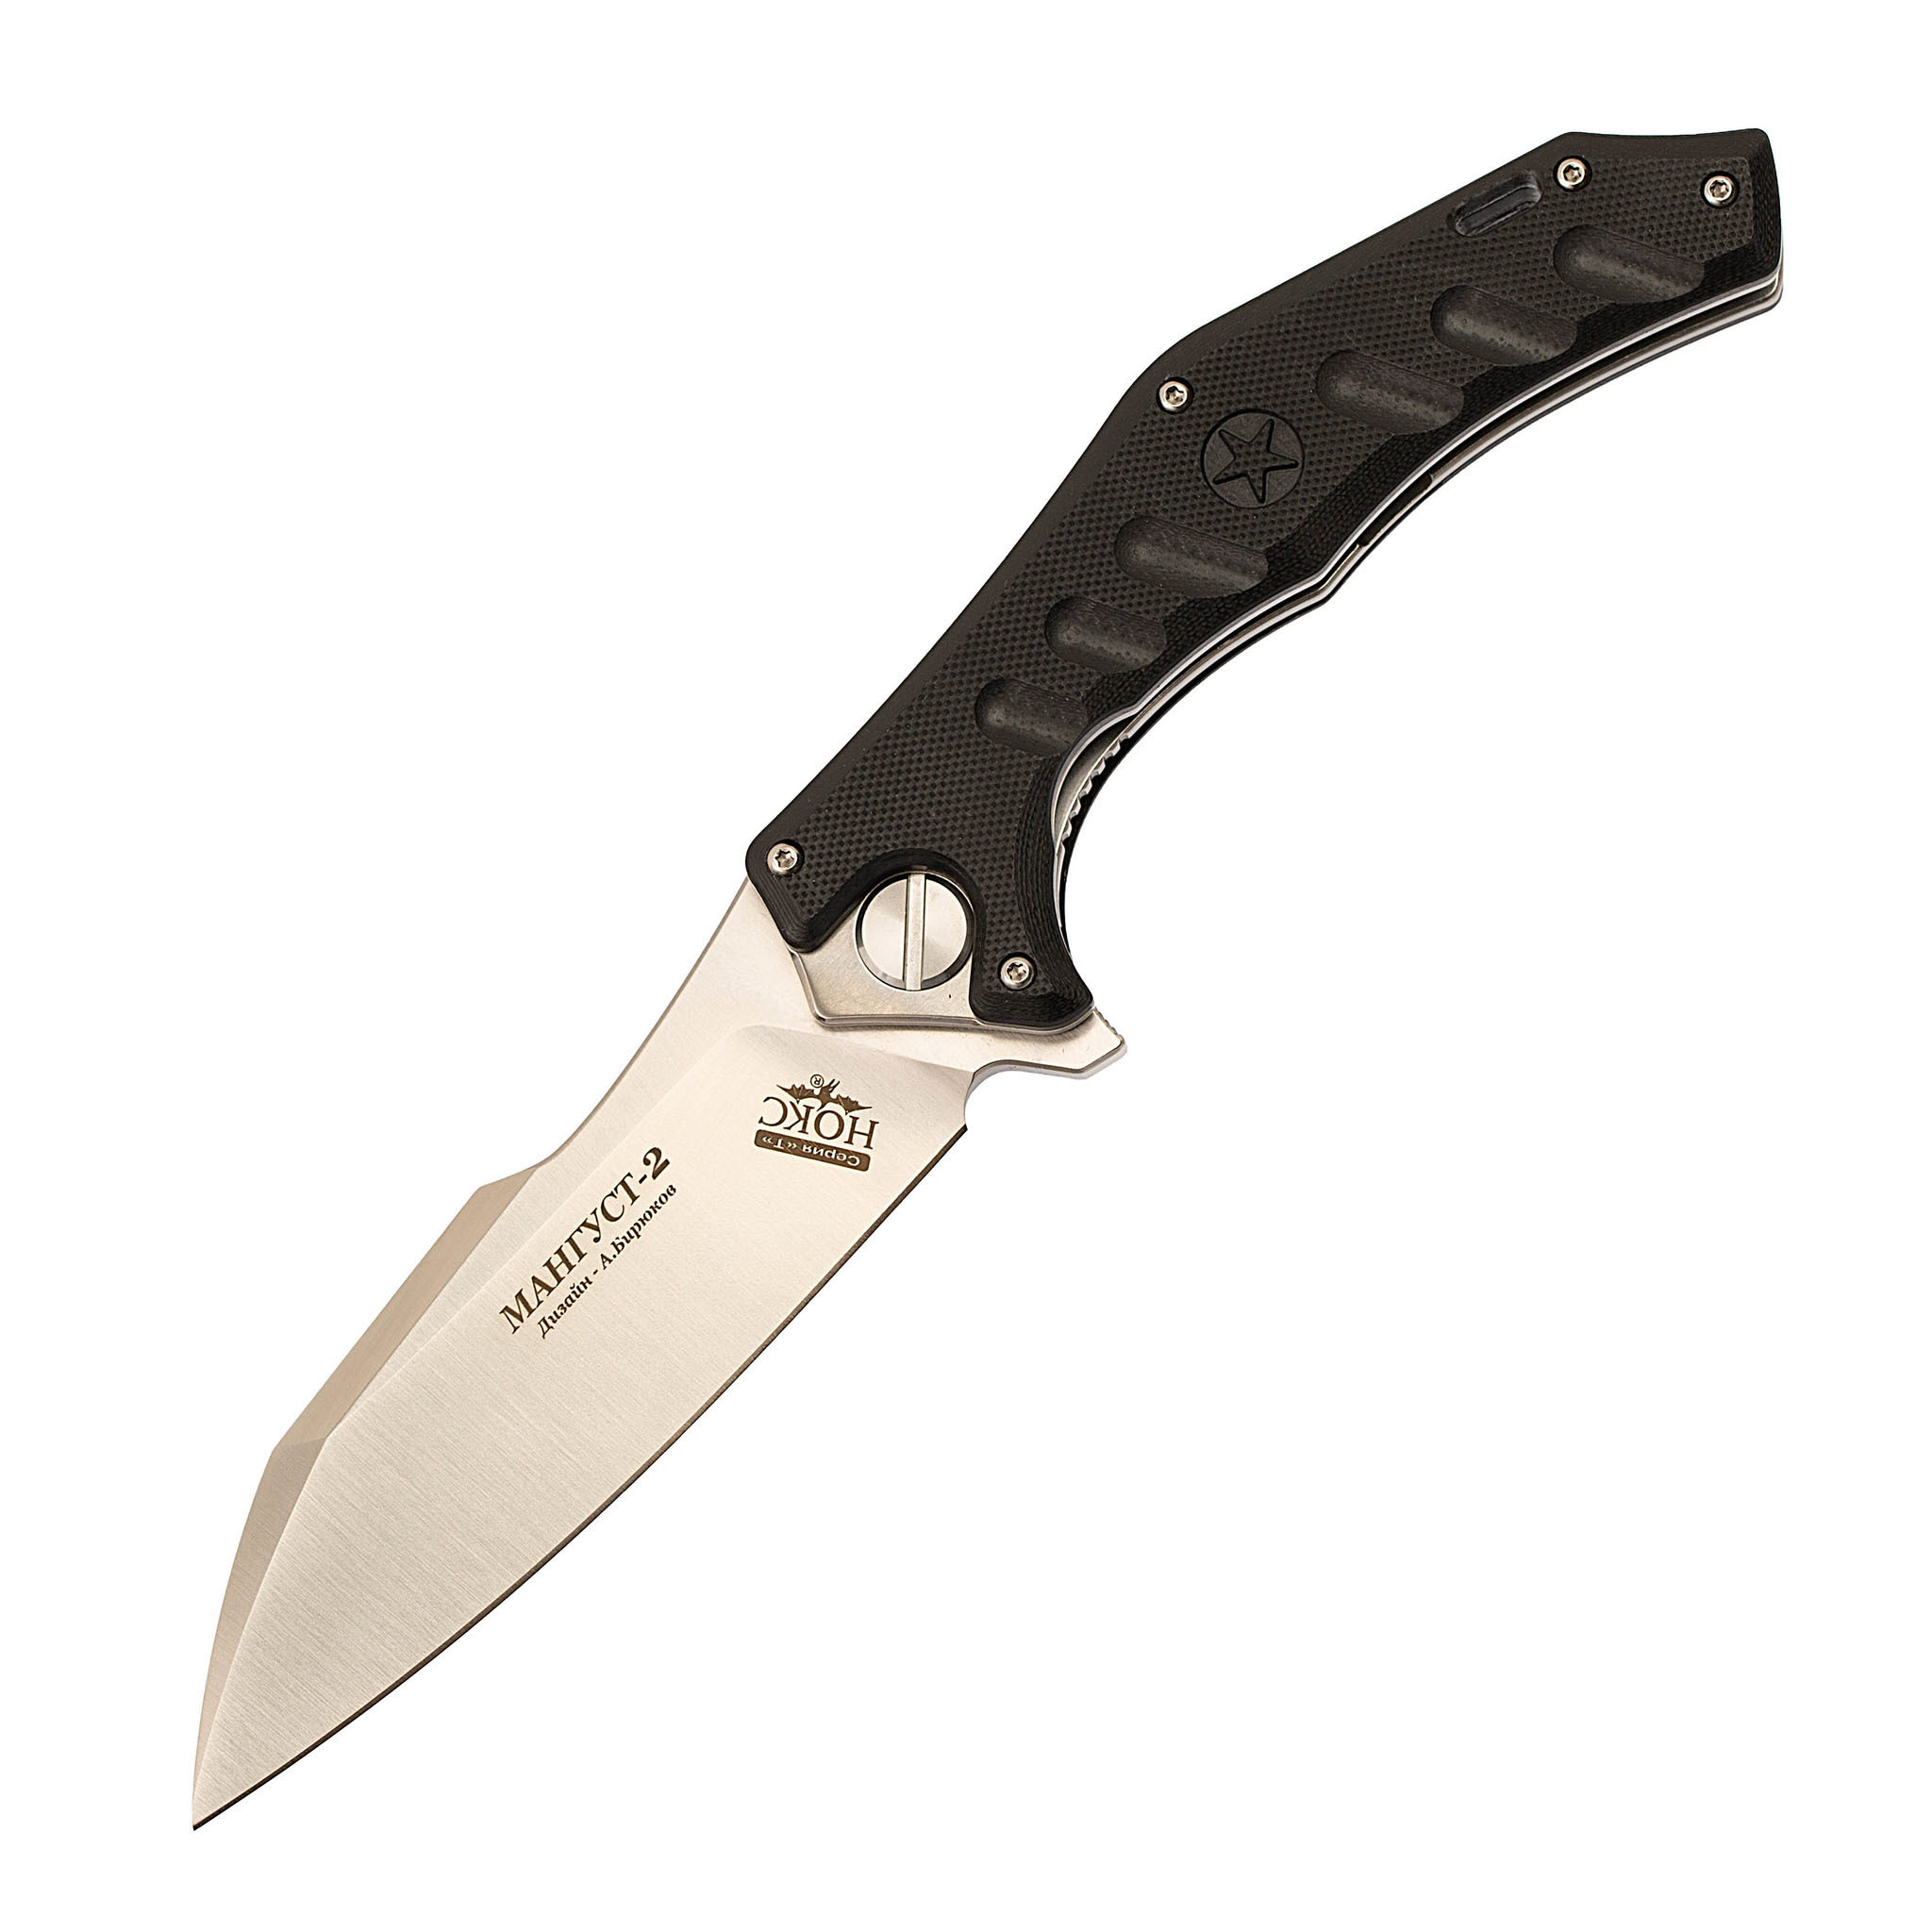 Нож Мангуст-2, сталь D2, рукоять G10 черный полуавтоматический складной нож kershaw blur k1670bw сталь sandvik 14c28n рукоять алюминий черный